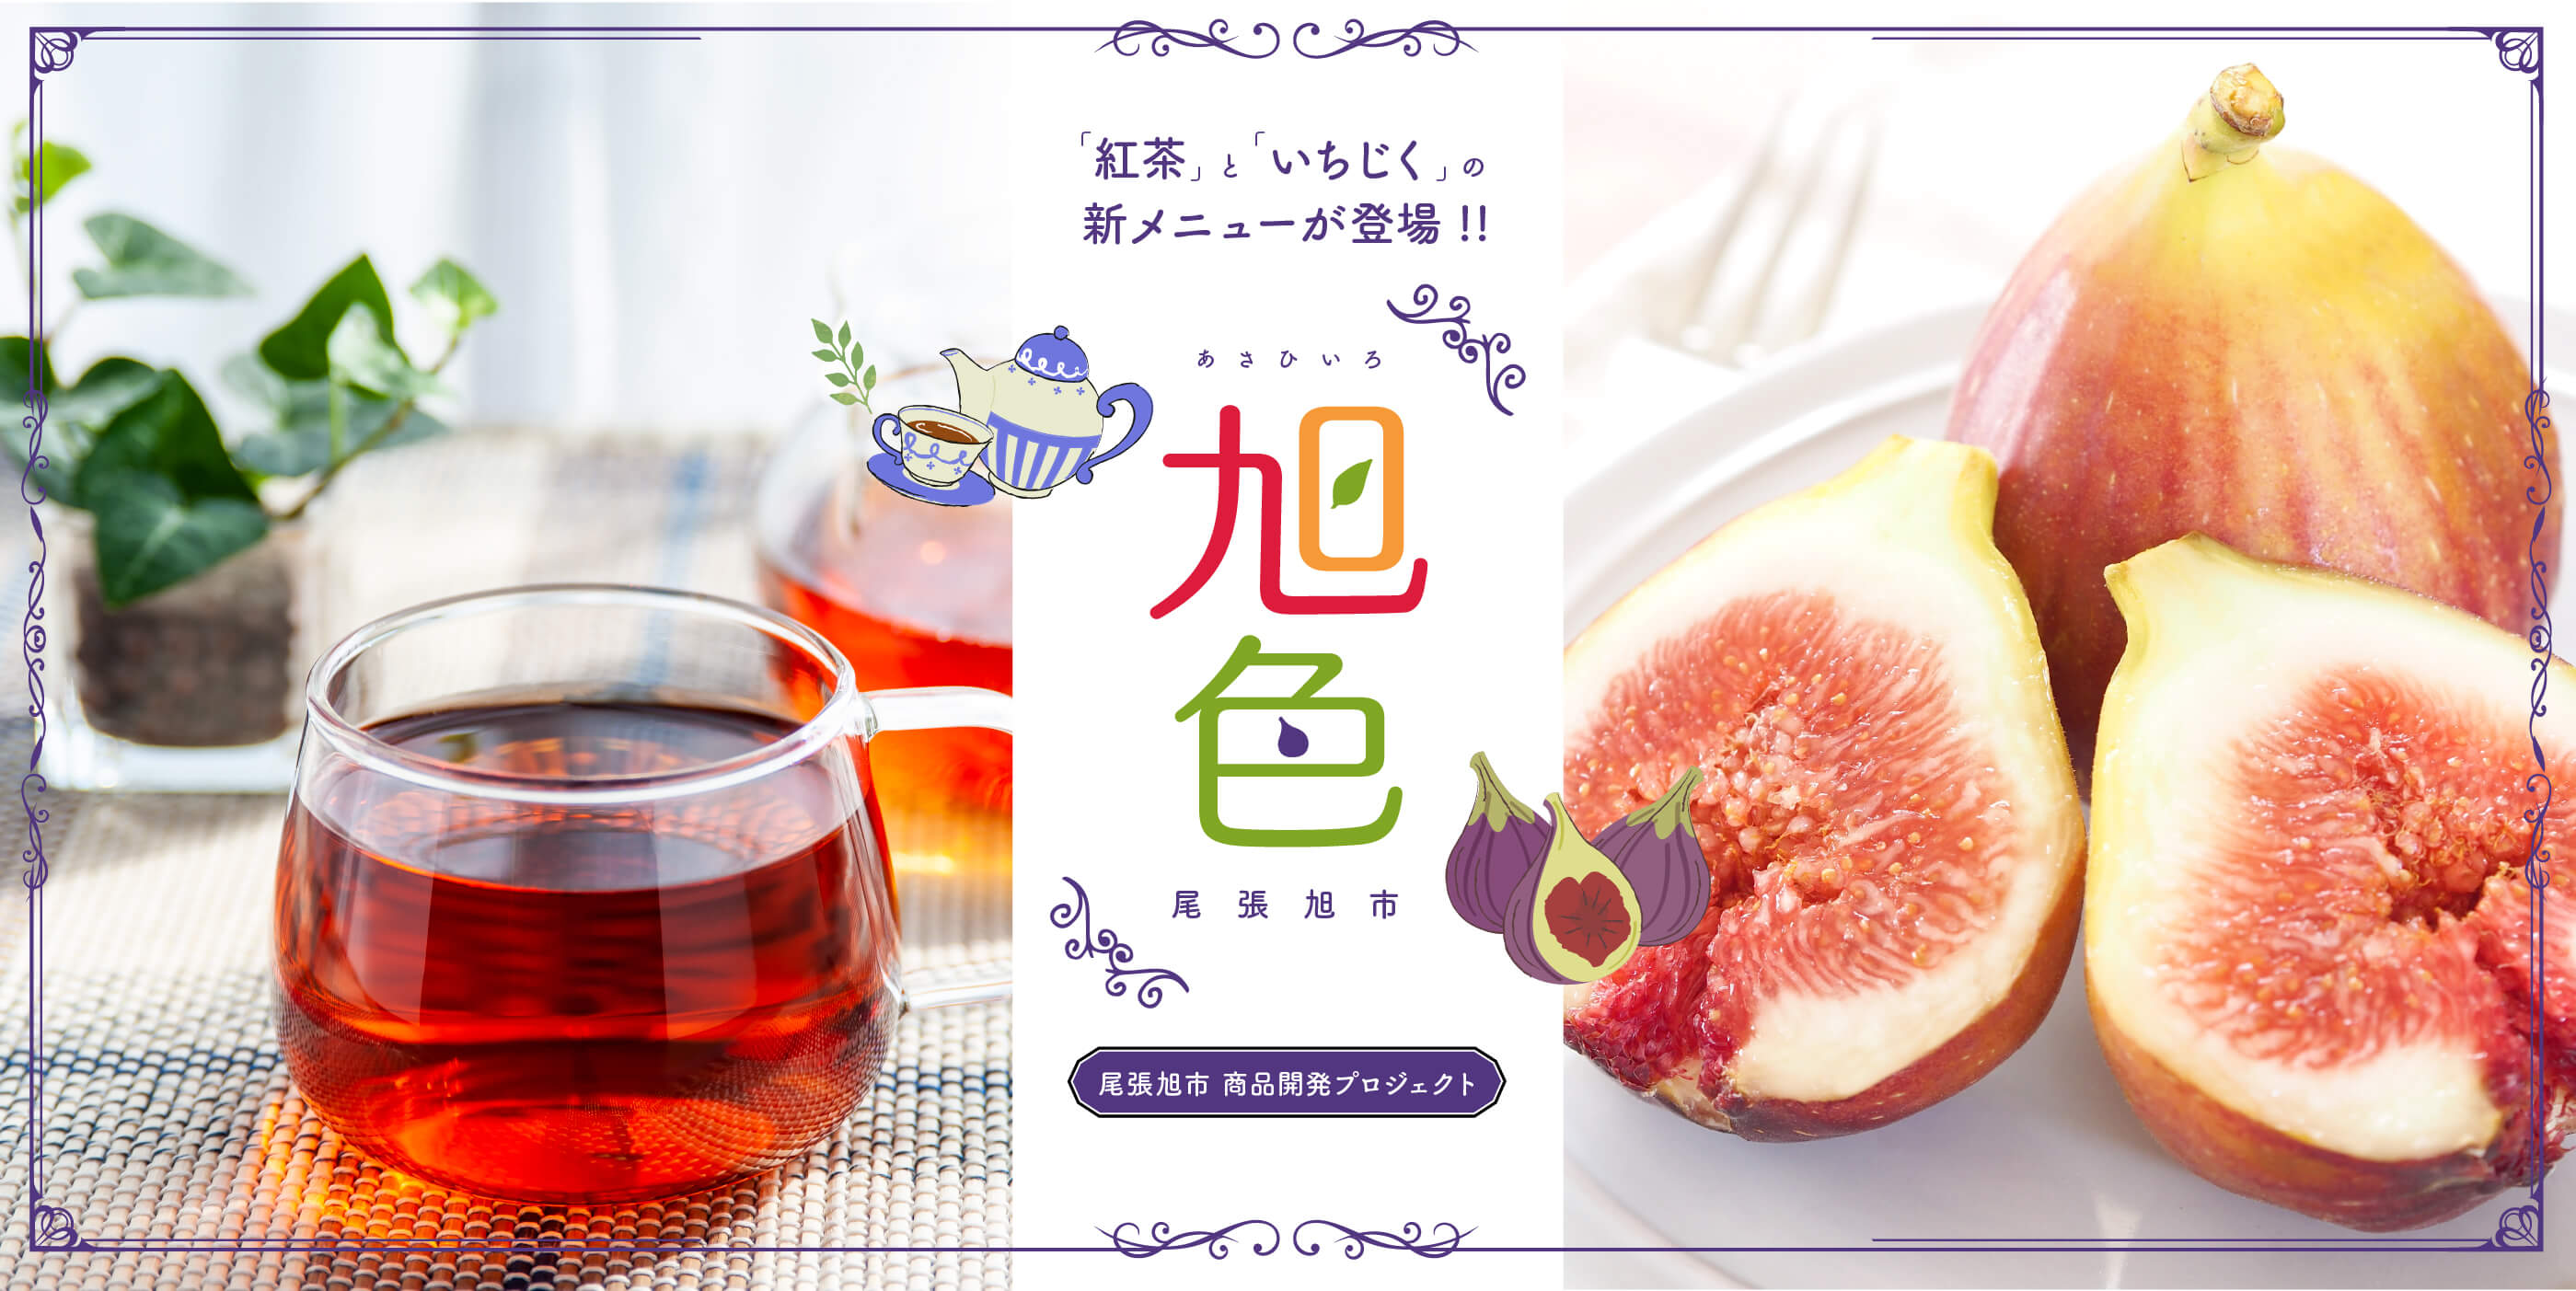 「紅茶」と「いちじく」の新メニューが登場!!「旭色」尾張旭市 商品開発プロジェクト